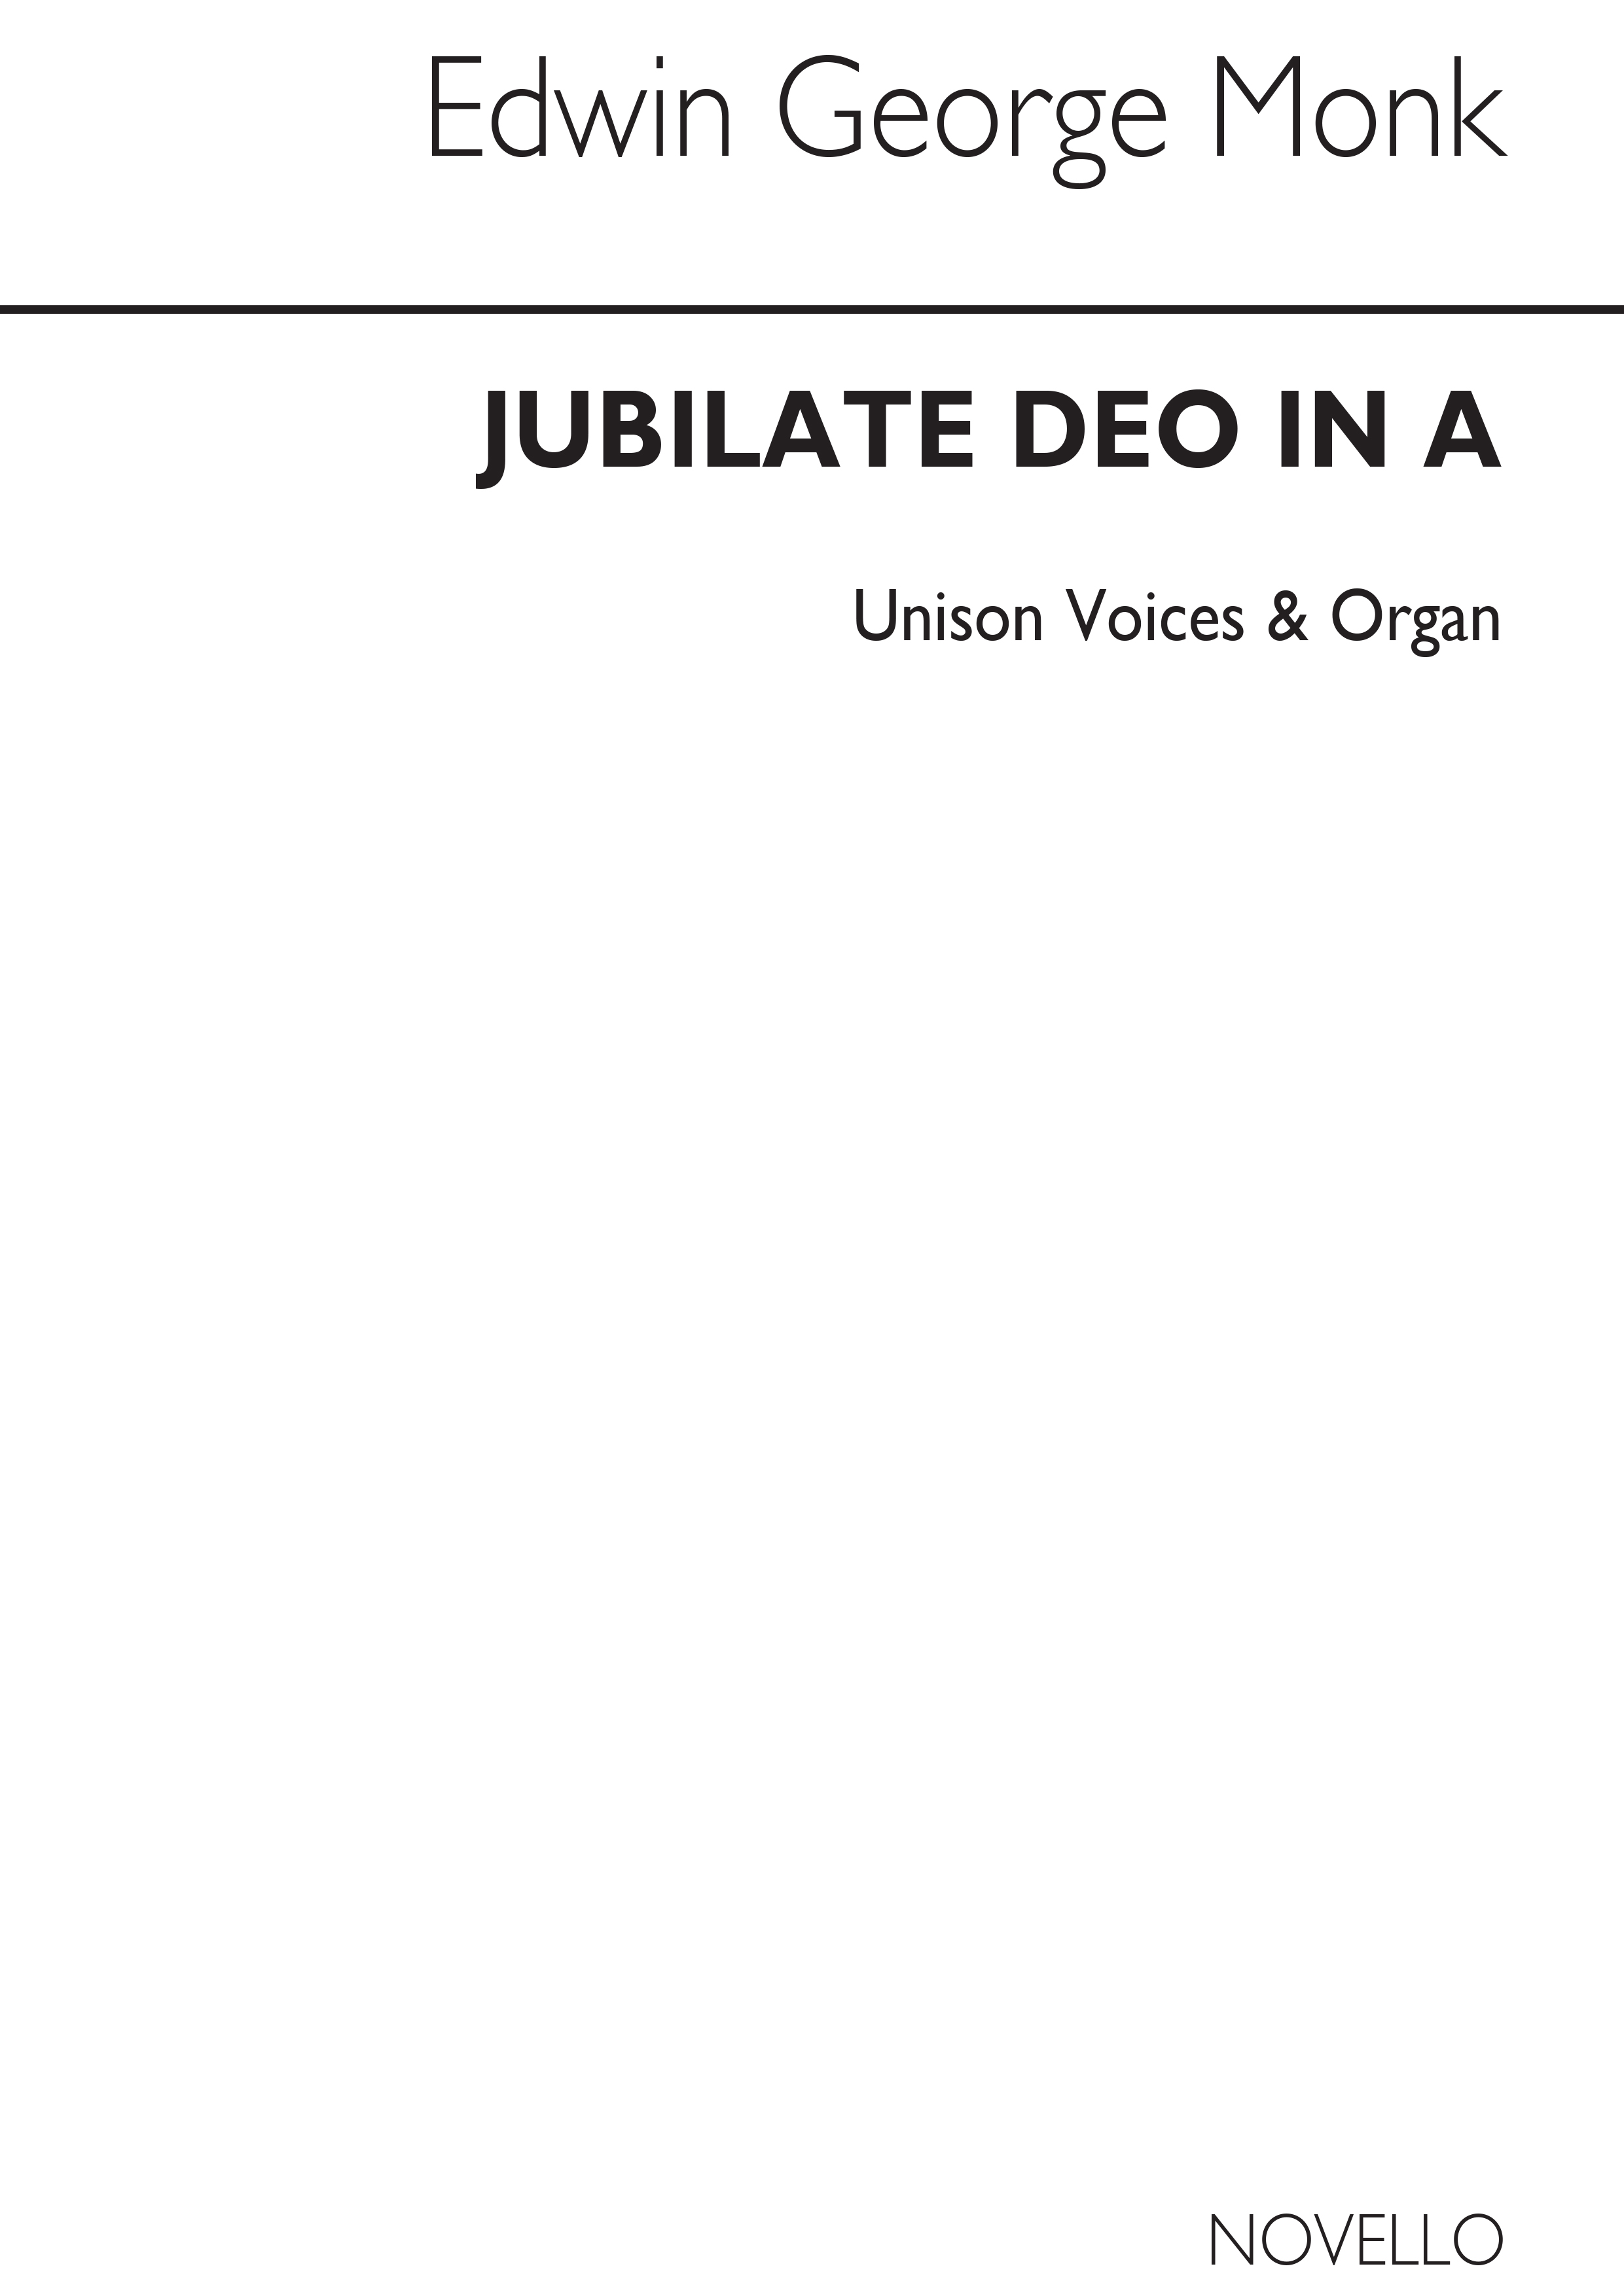 Edwin George Monk: Jubilate Deo In A Unison/Organ